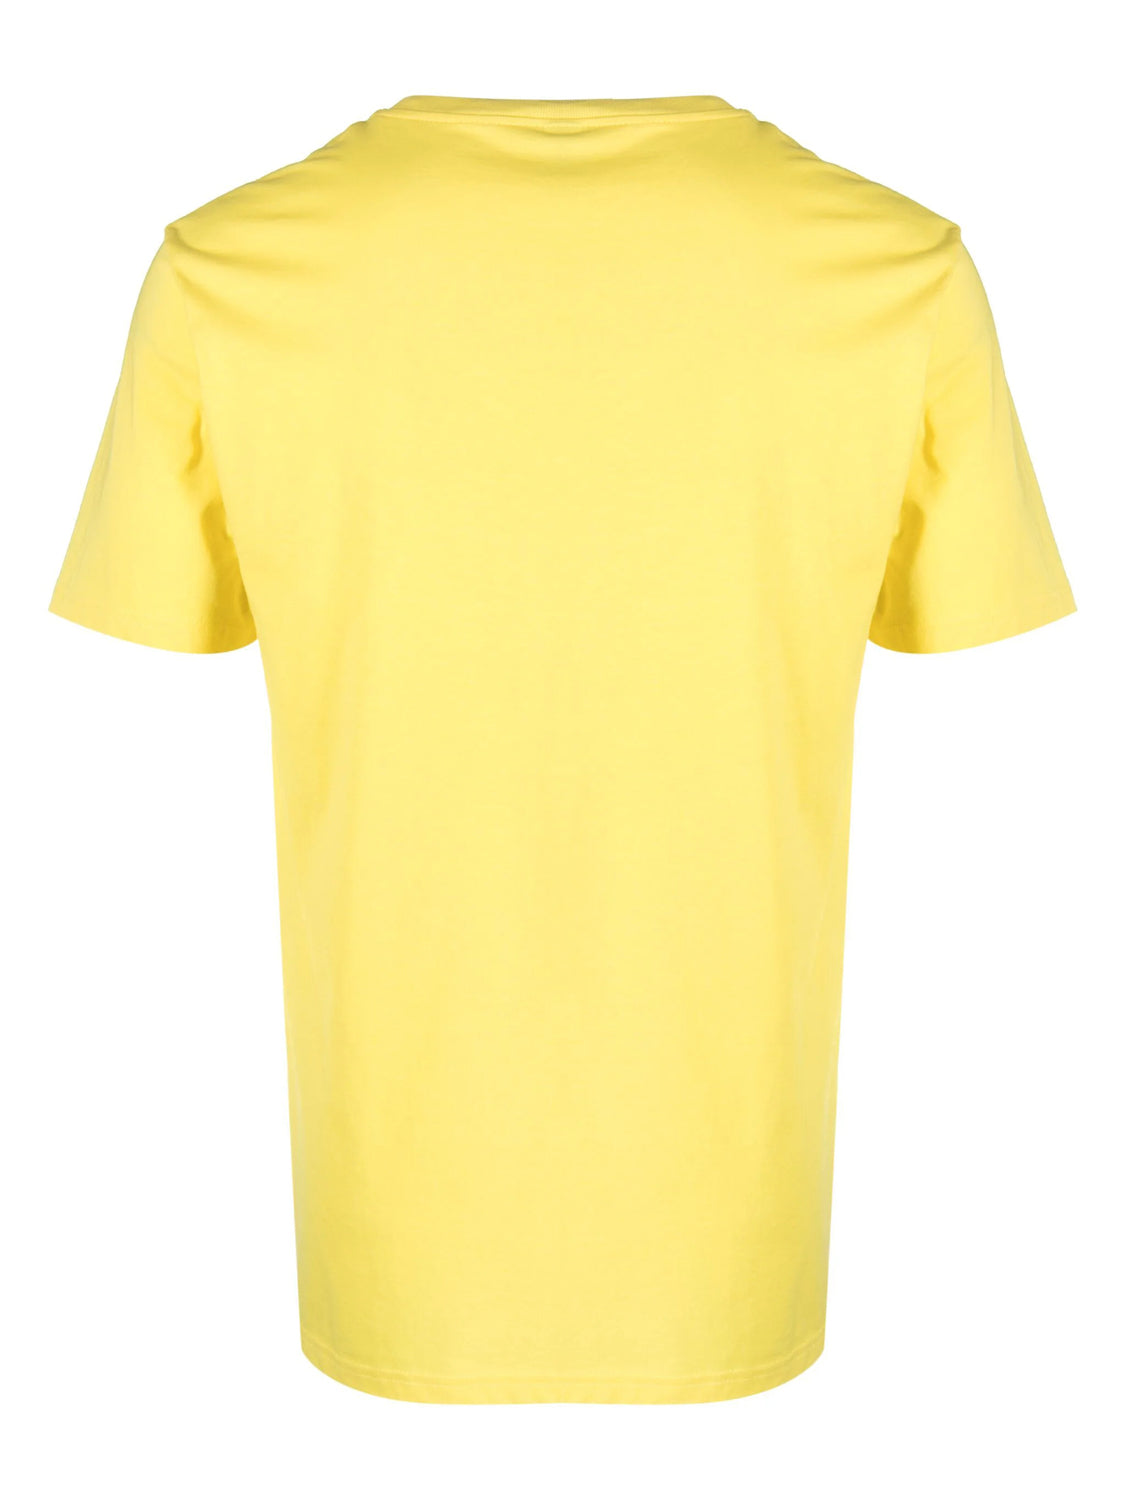 Moschino T Shirt A0712 4424 Yellow Amarelo_shot3